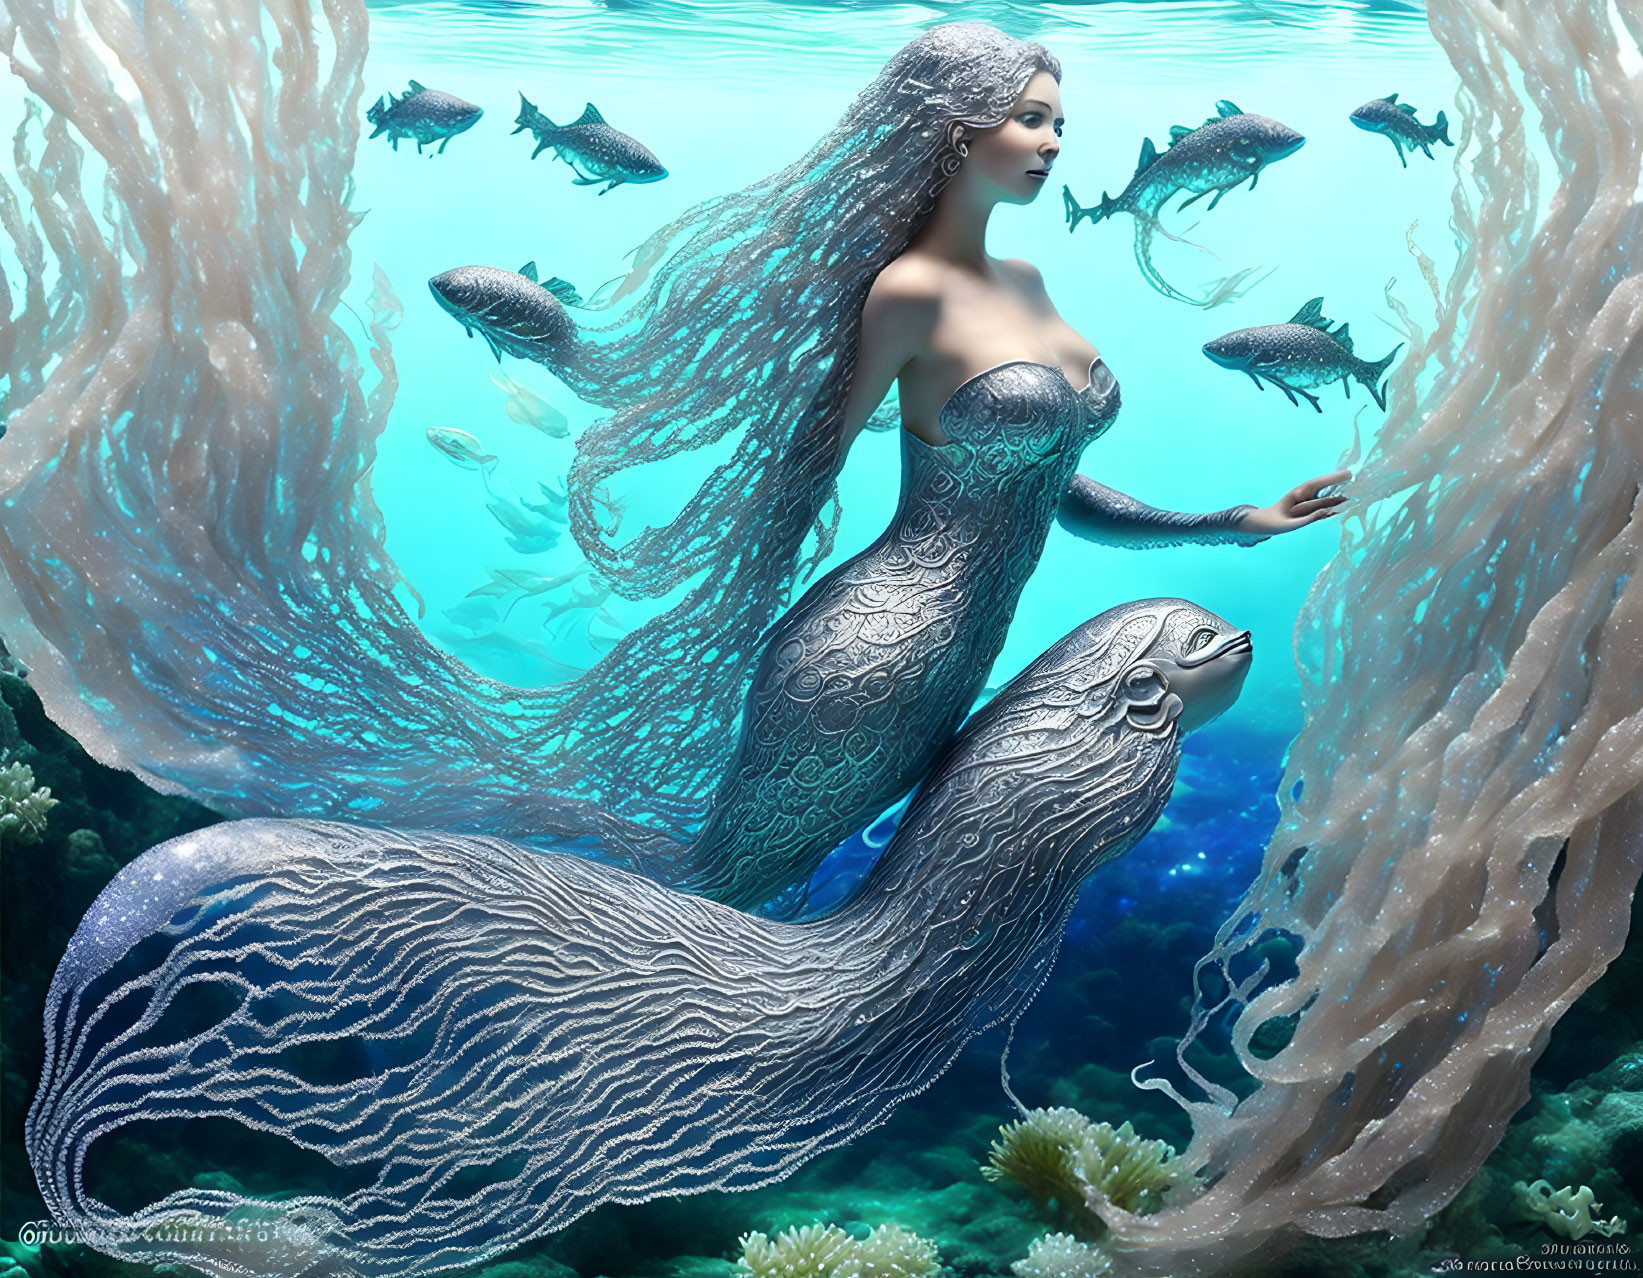  Silver mermaid